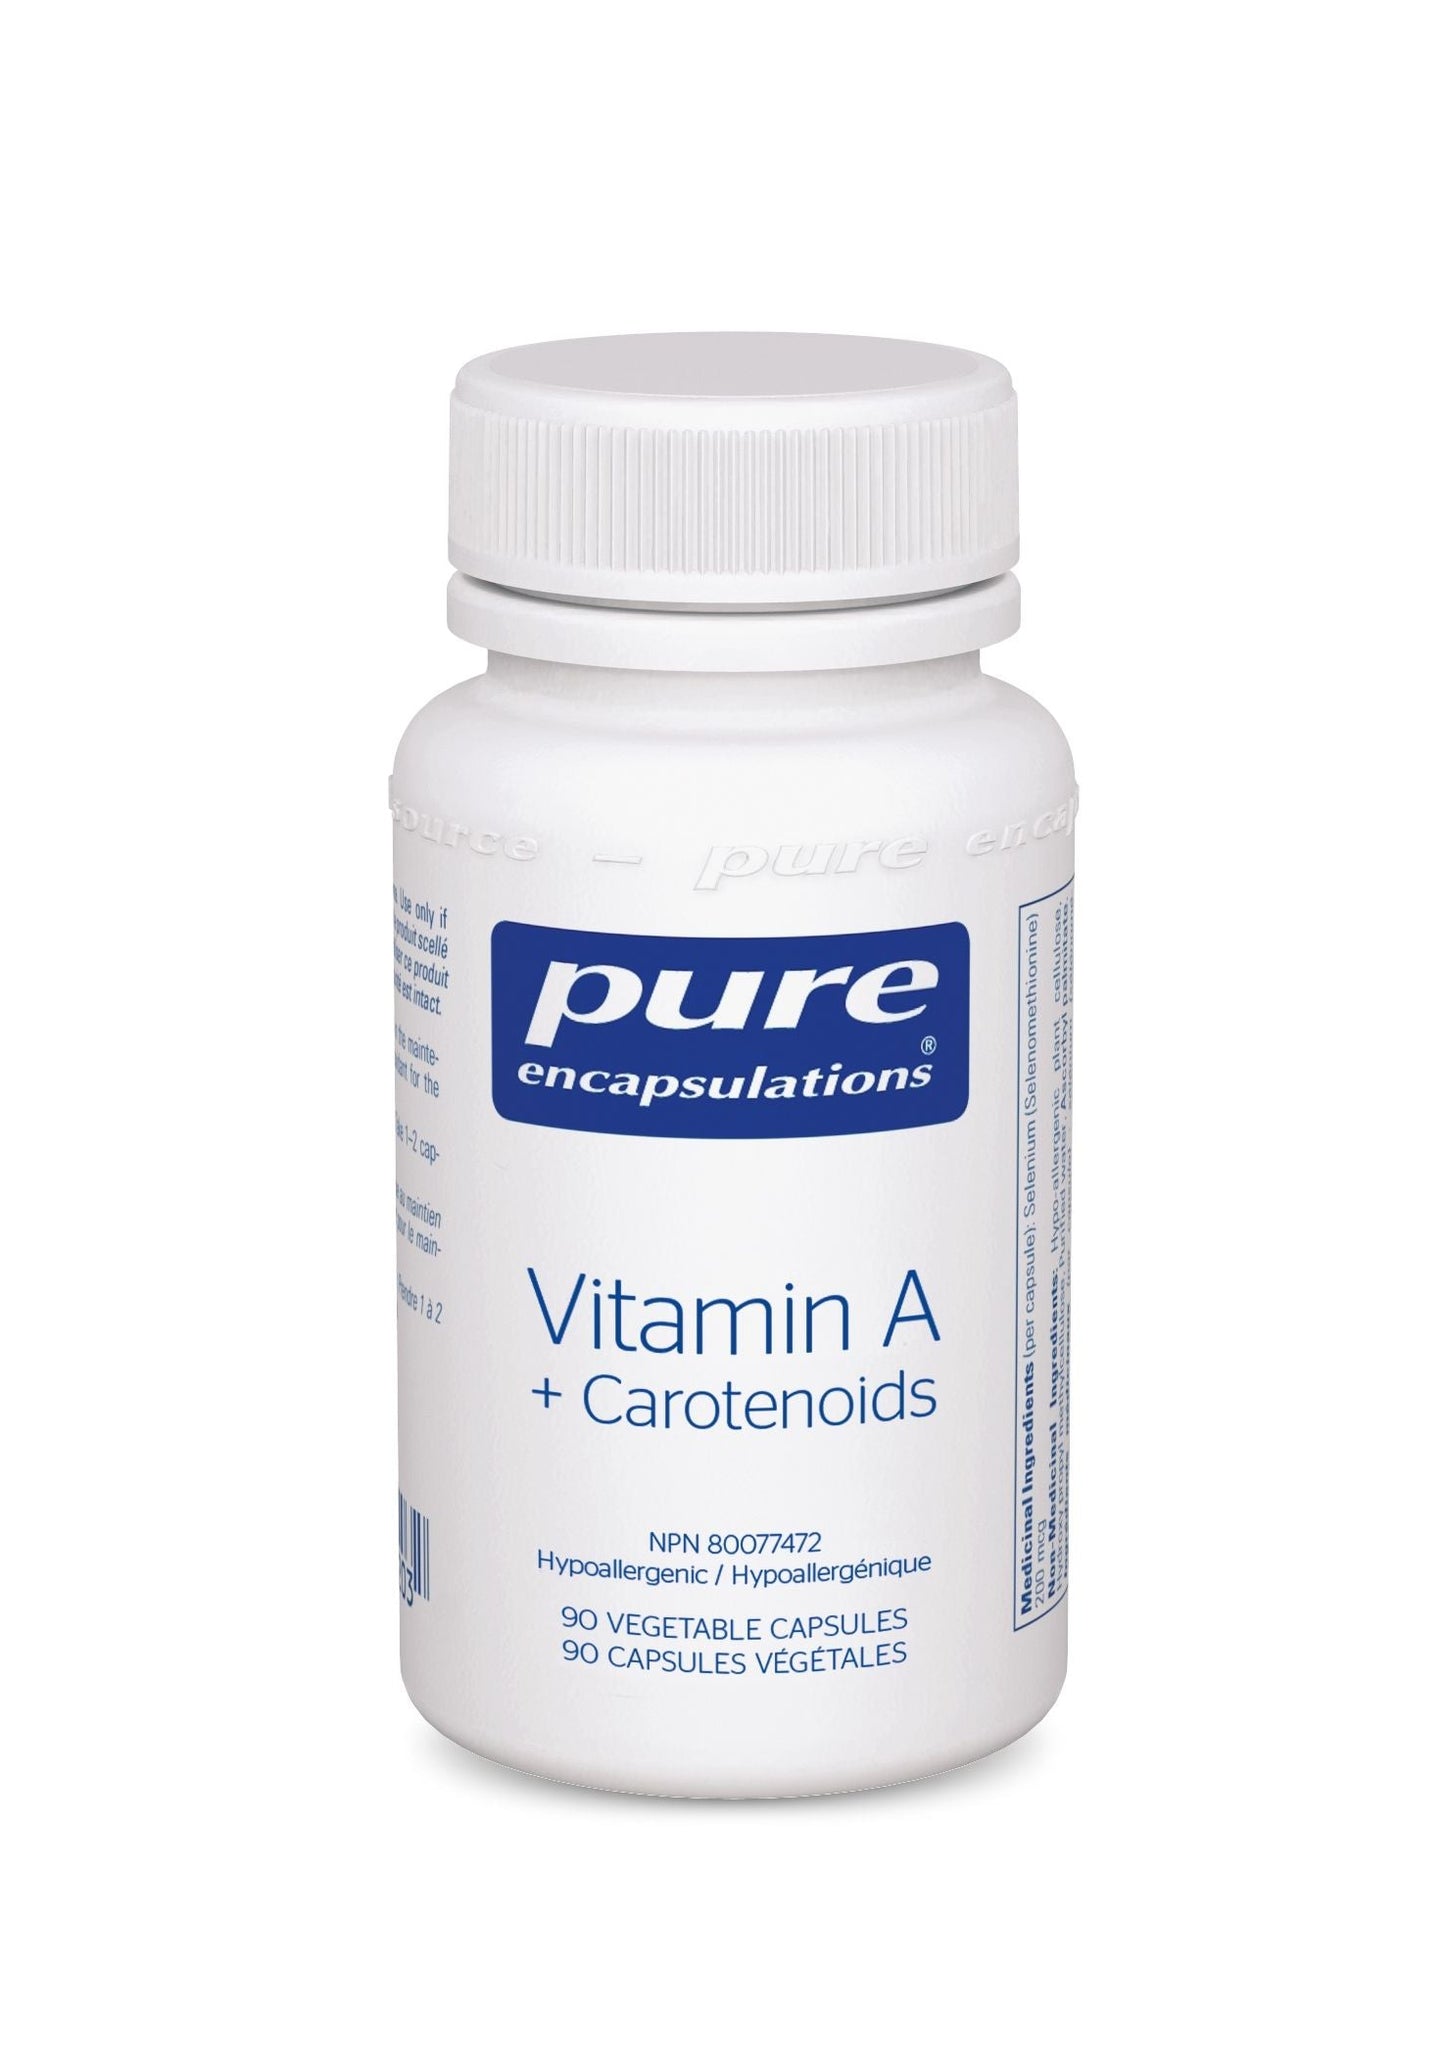 Vitamin A + Carotenoids - Bien-être Oculaire et Immunitaire